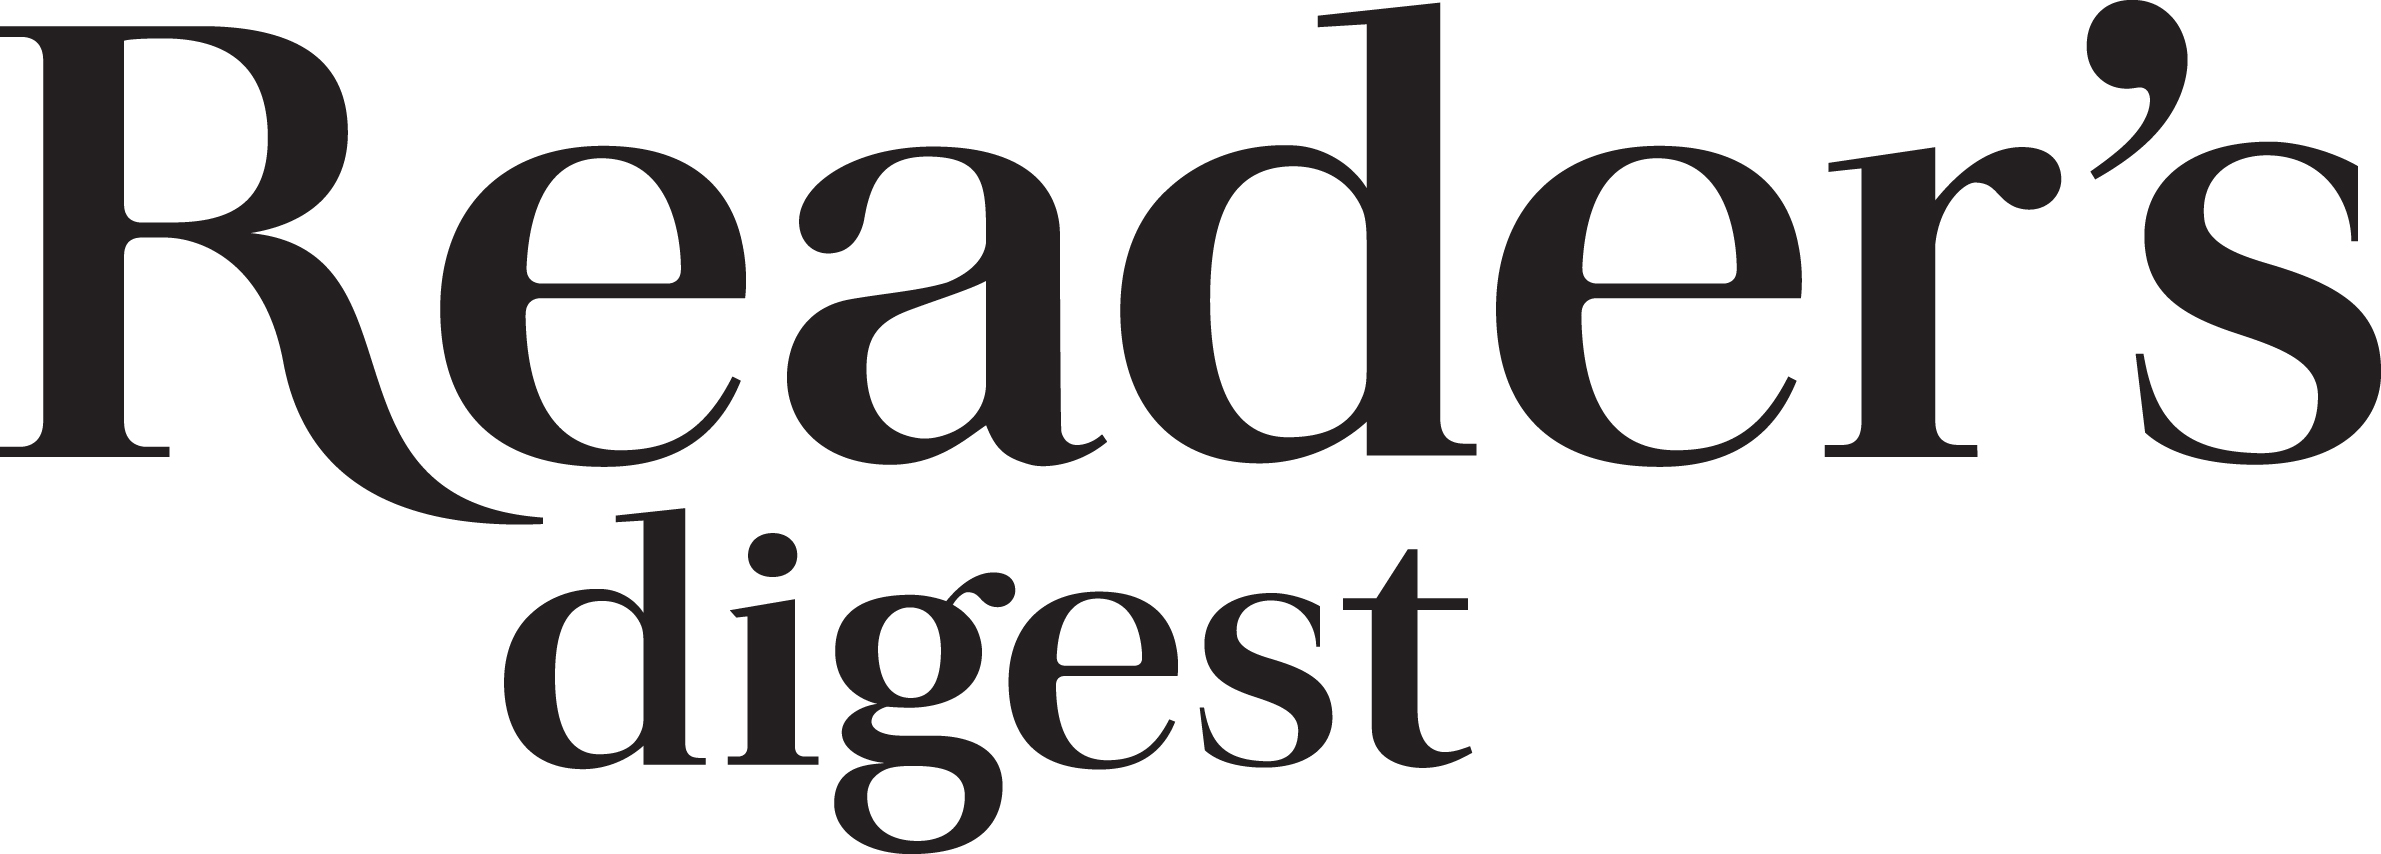 Image result for readers digest logo